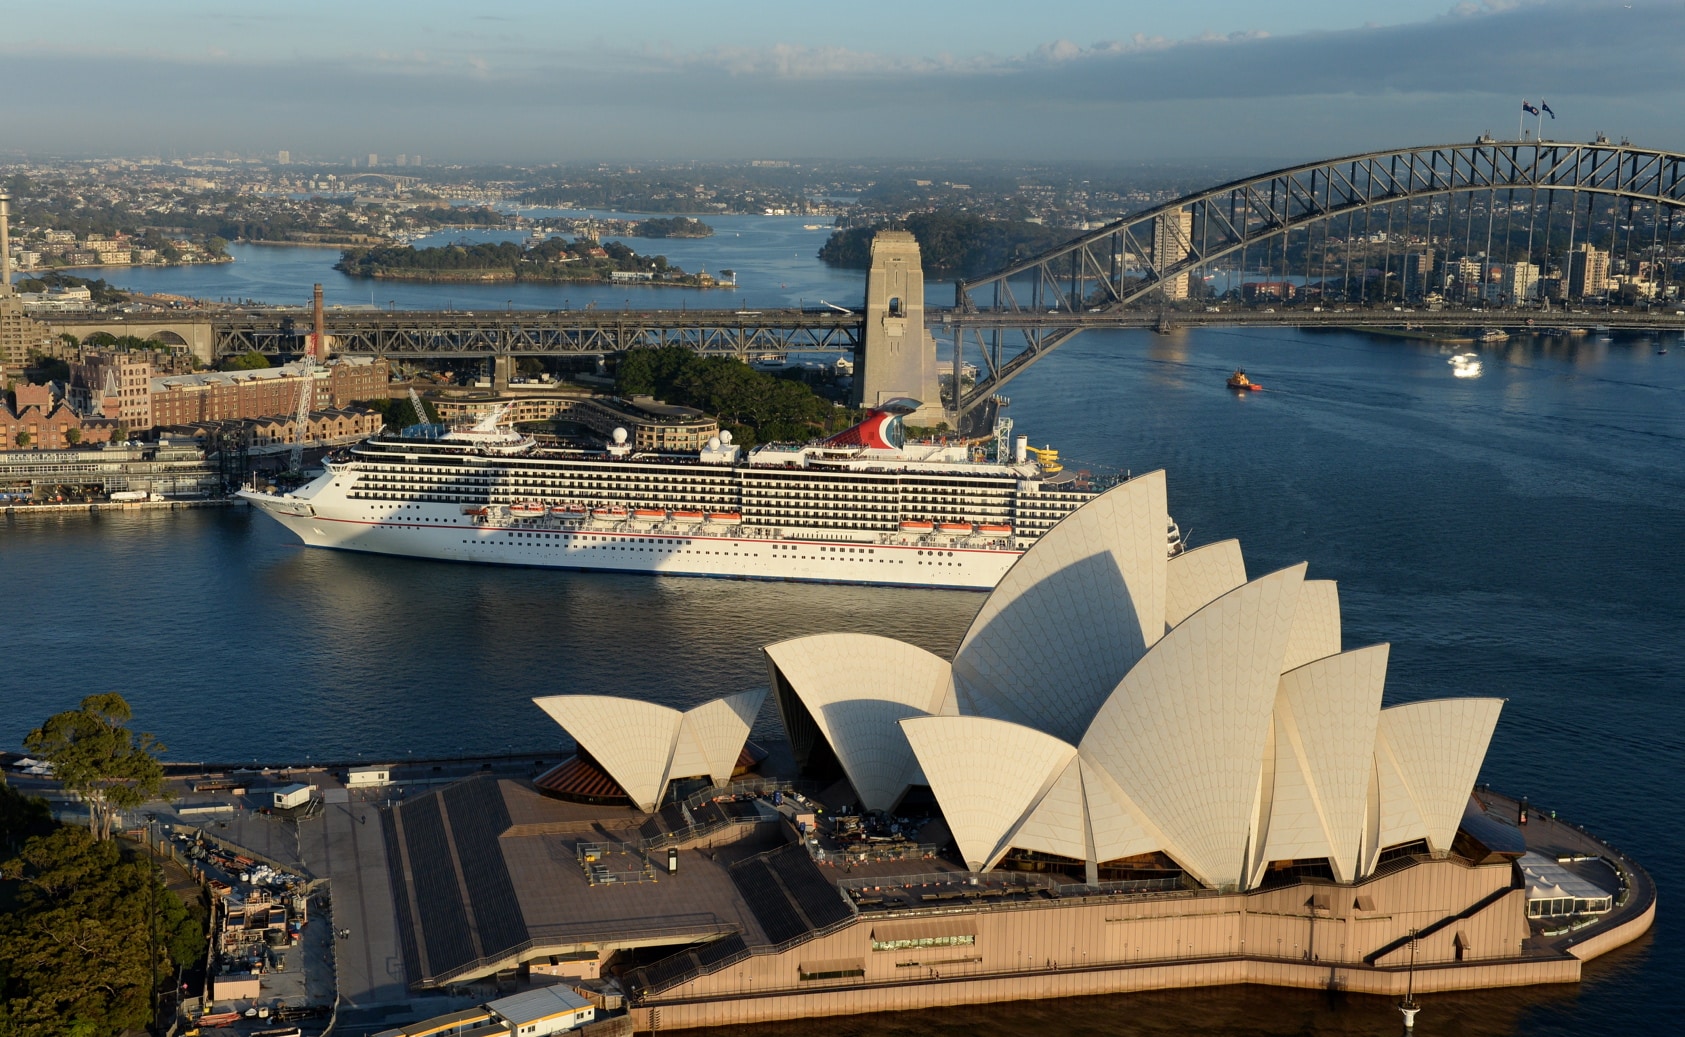 Carnival Legend Arrives into Sydney Harbour (1)